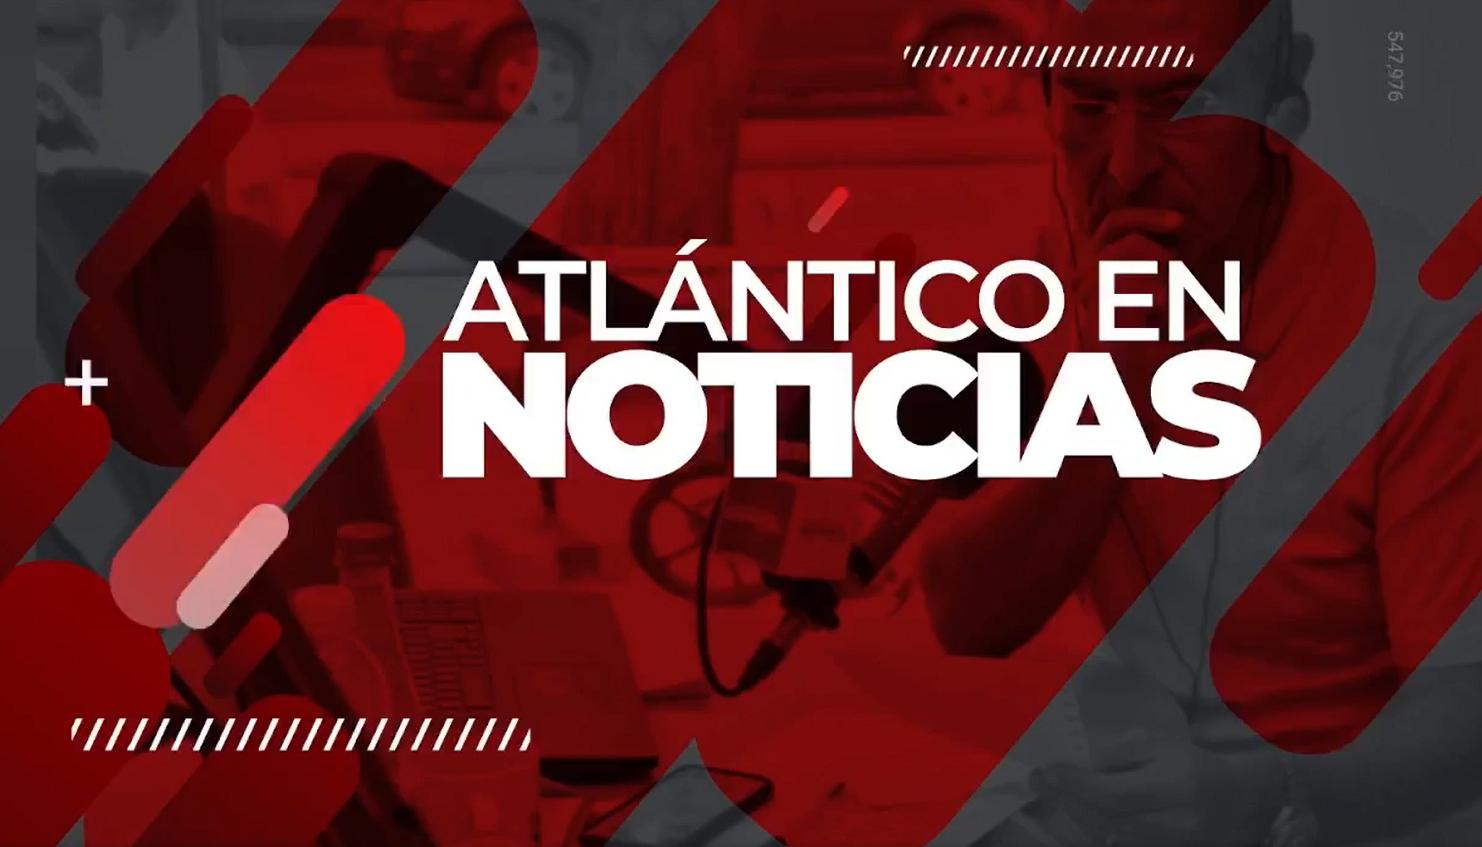 Atlántico en Noticias.